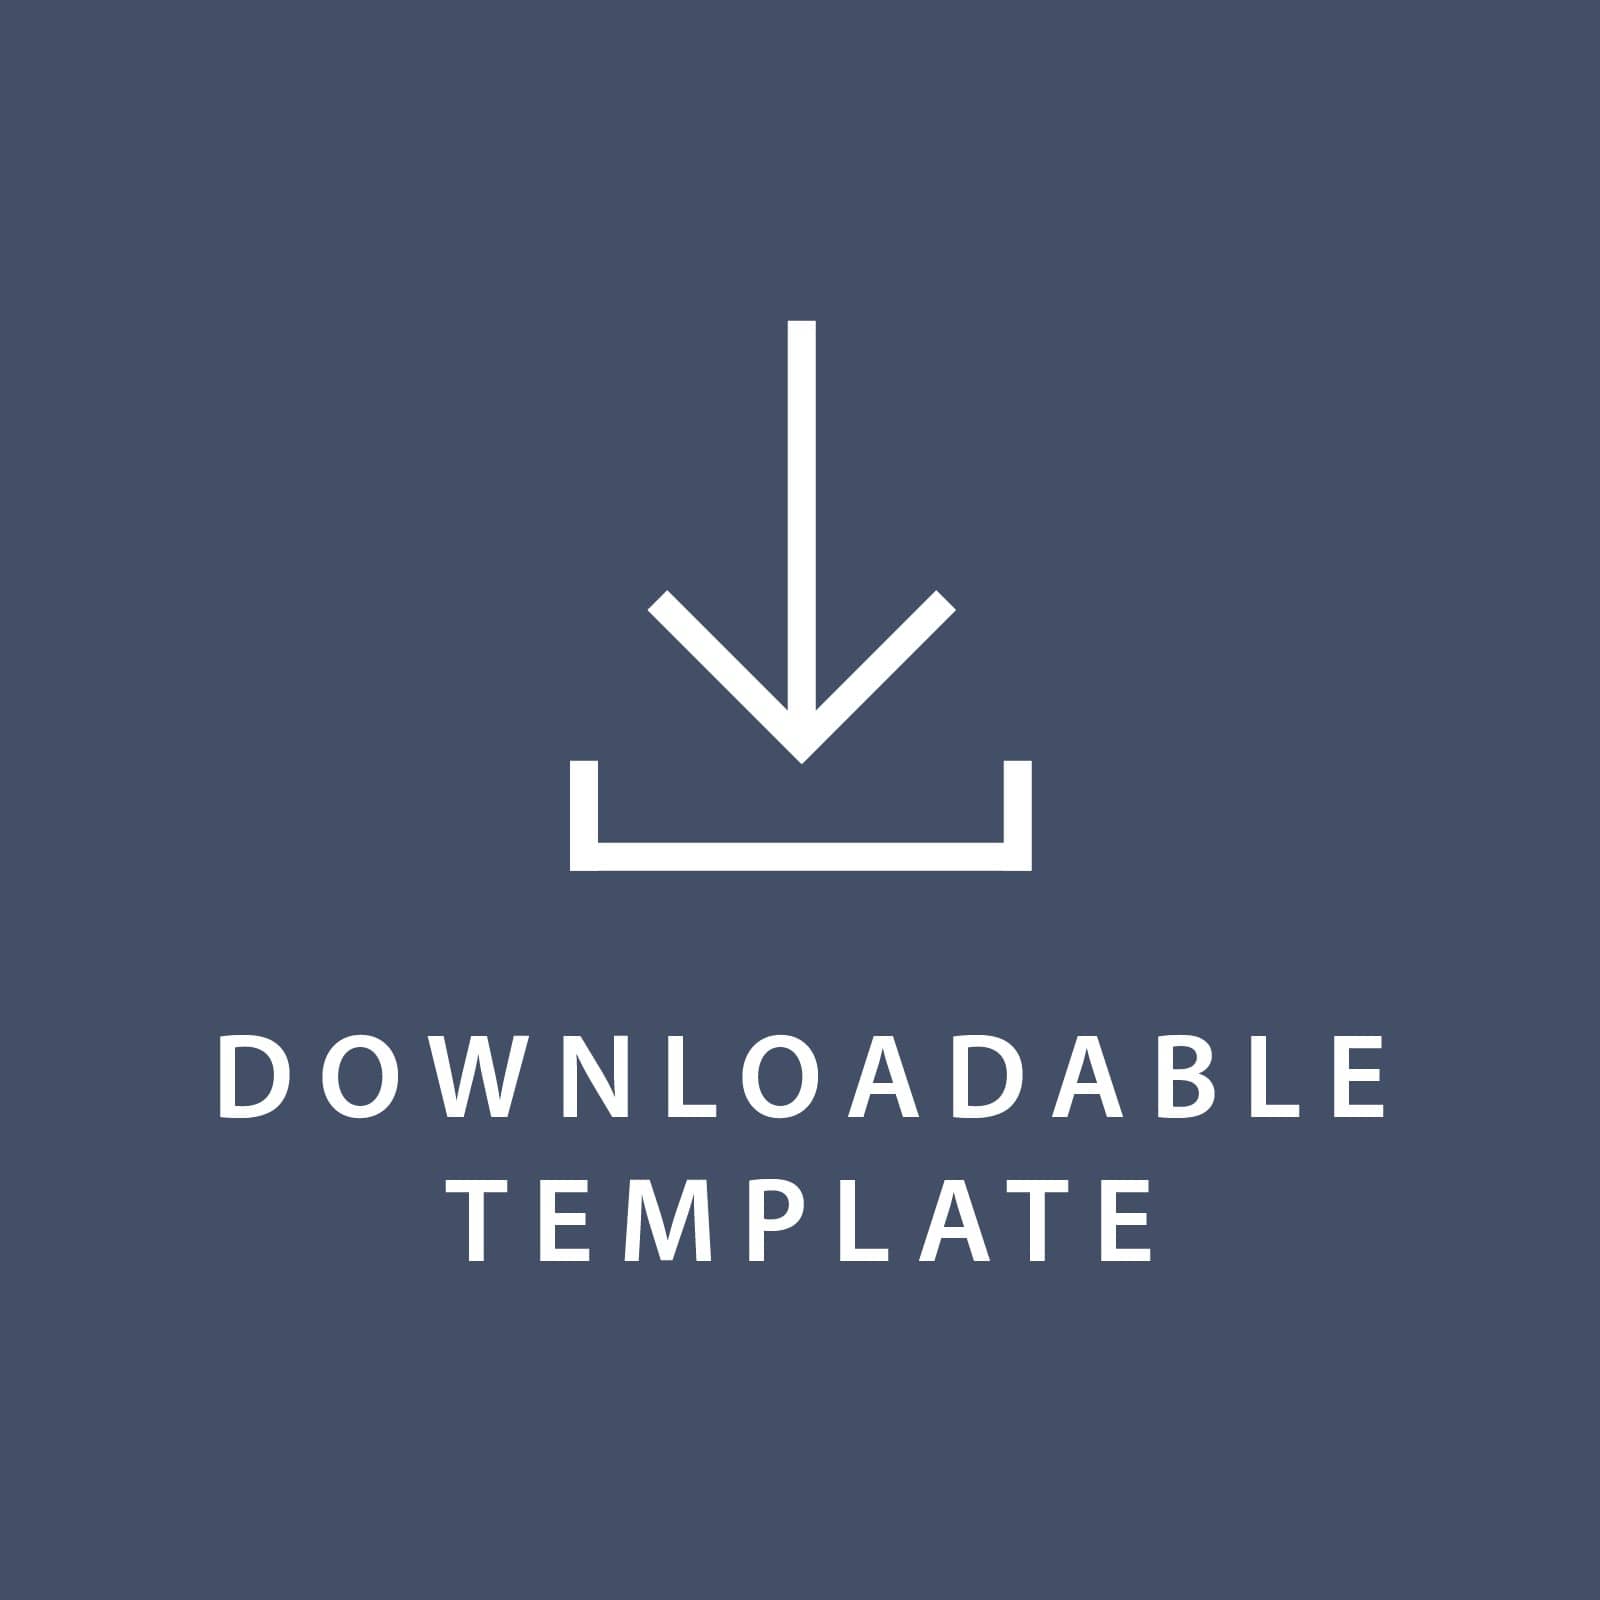 Template for 5.5 x 8.5 Invitations Gartner Studios Template tmplt0848